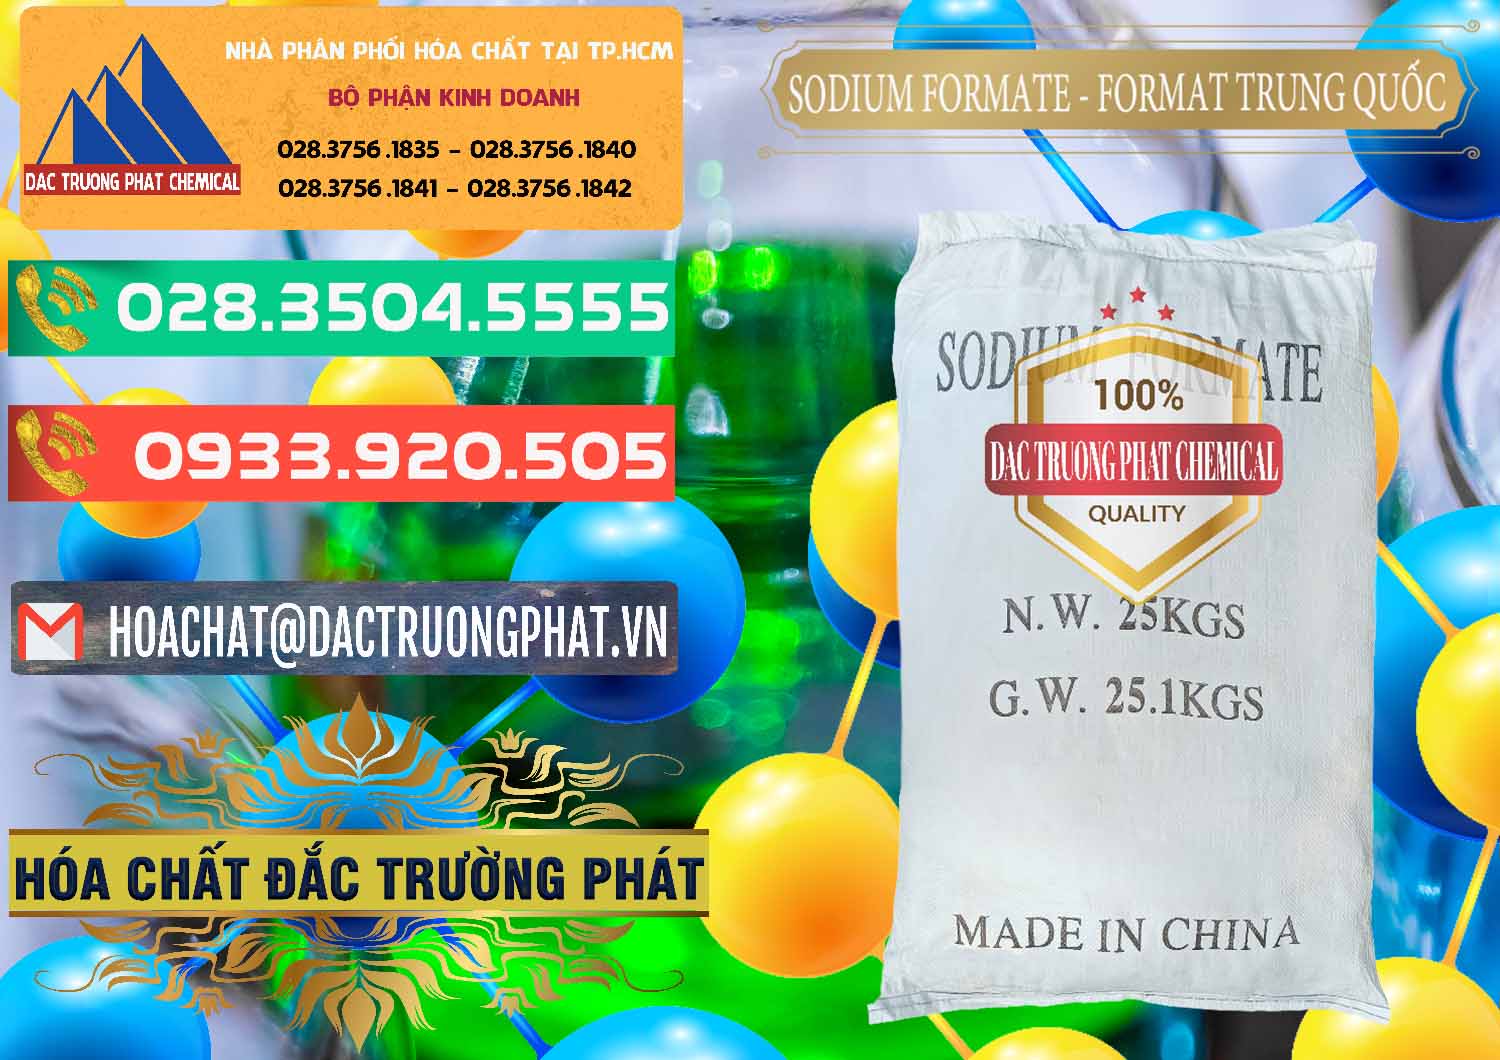 Nơi cung ứng _ bán Sodium Formate - Natri Format Trung Quốc China - 0142 - Đơn vị bán _ cung cấp hóa chất tại TP.HCM - congtyhoachat.com.vn